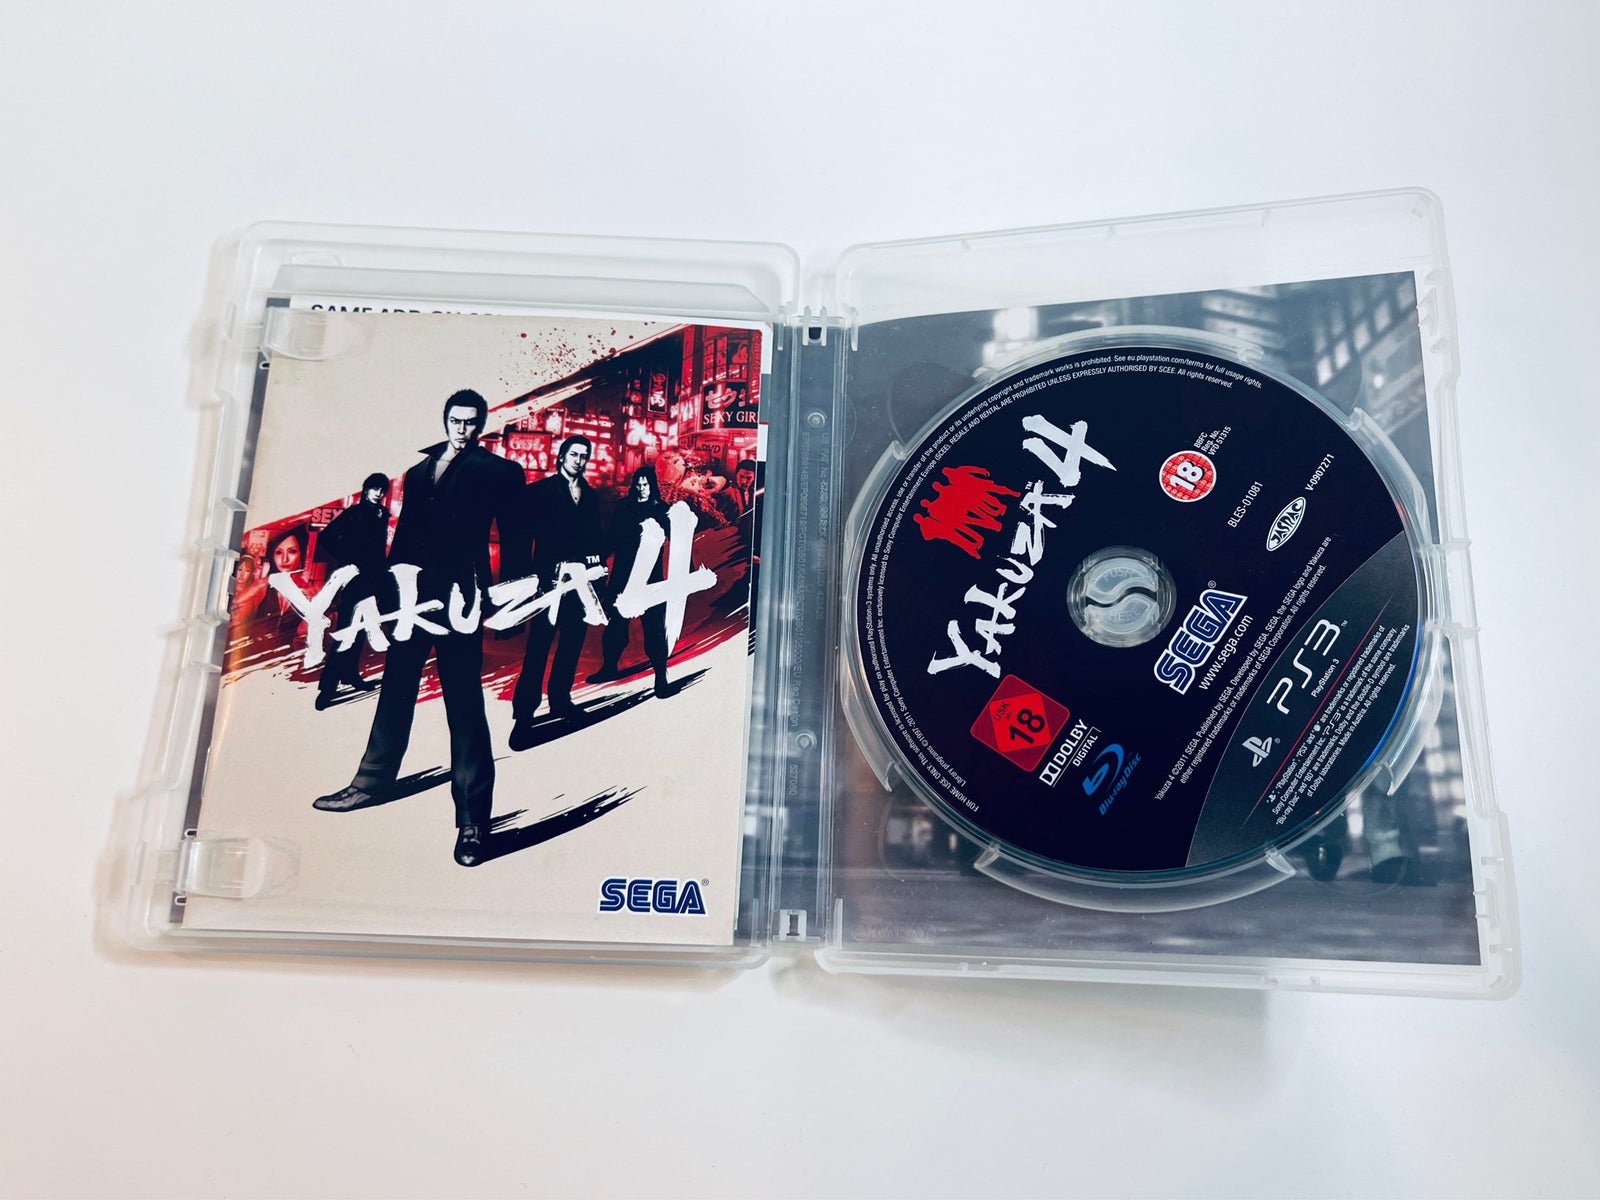 Yakuza 4, Playstation 3, PS3